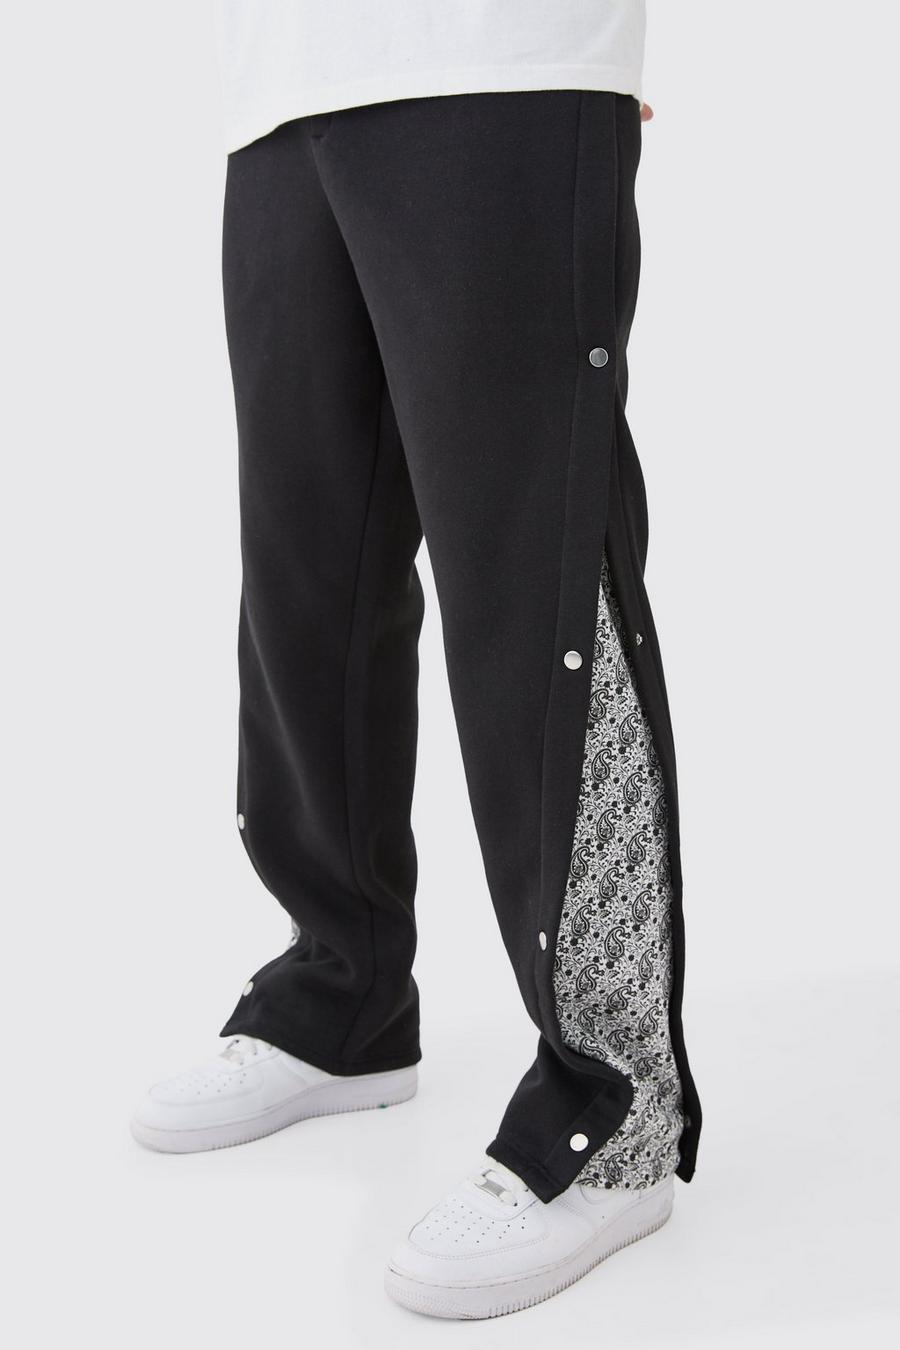 Pantalón deportivo Tall holgado con panel lateral y botones de presión, Black